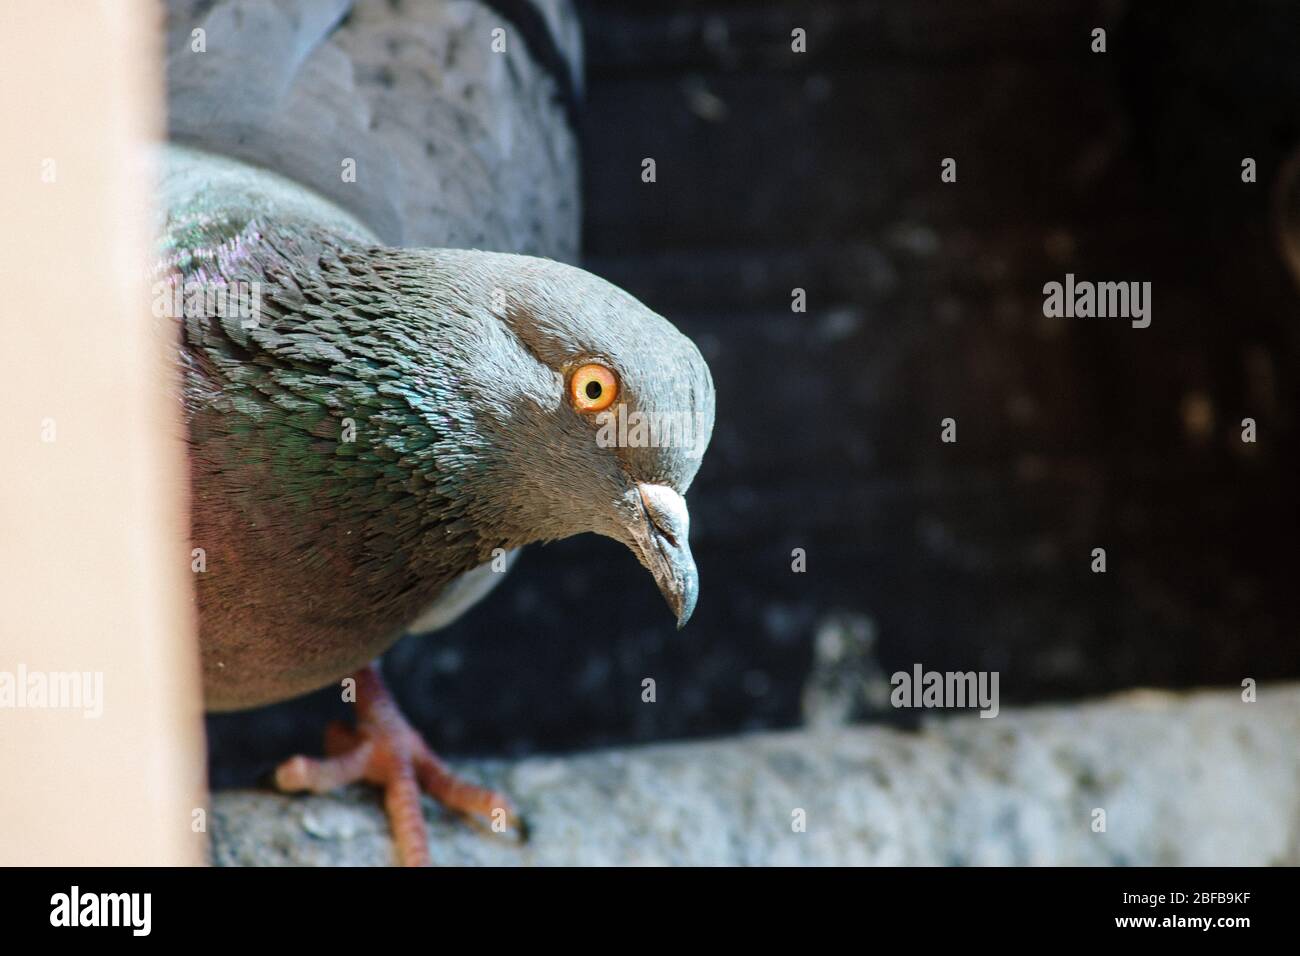 Pigeon close up shot Stock Photo